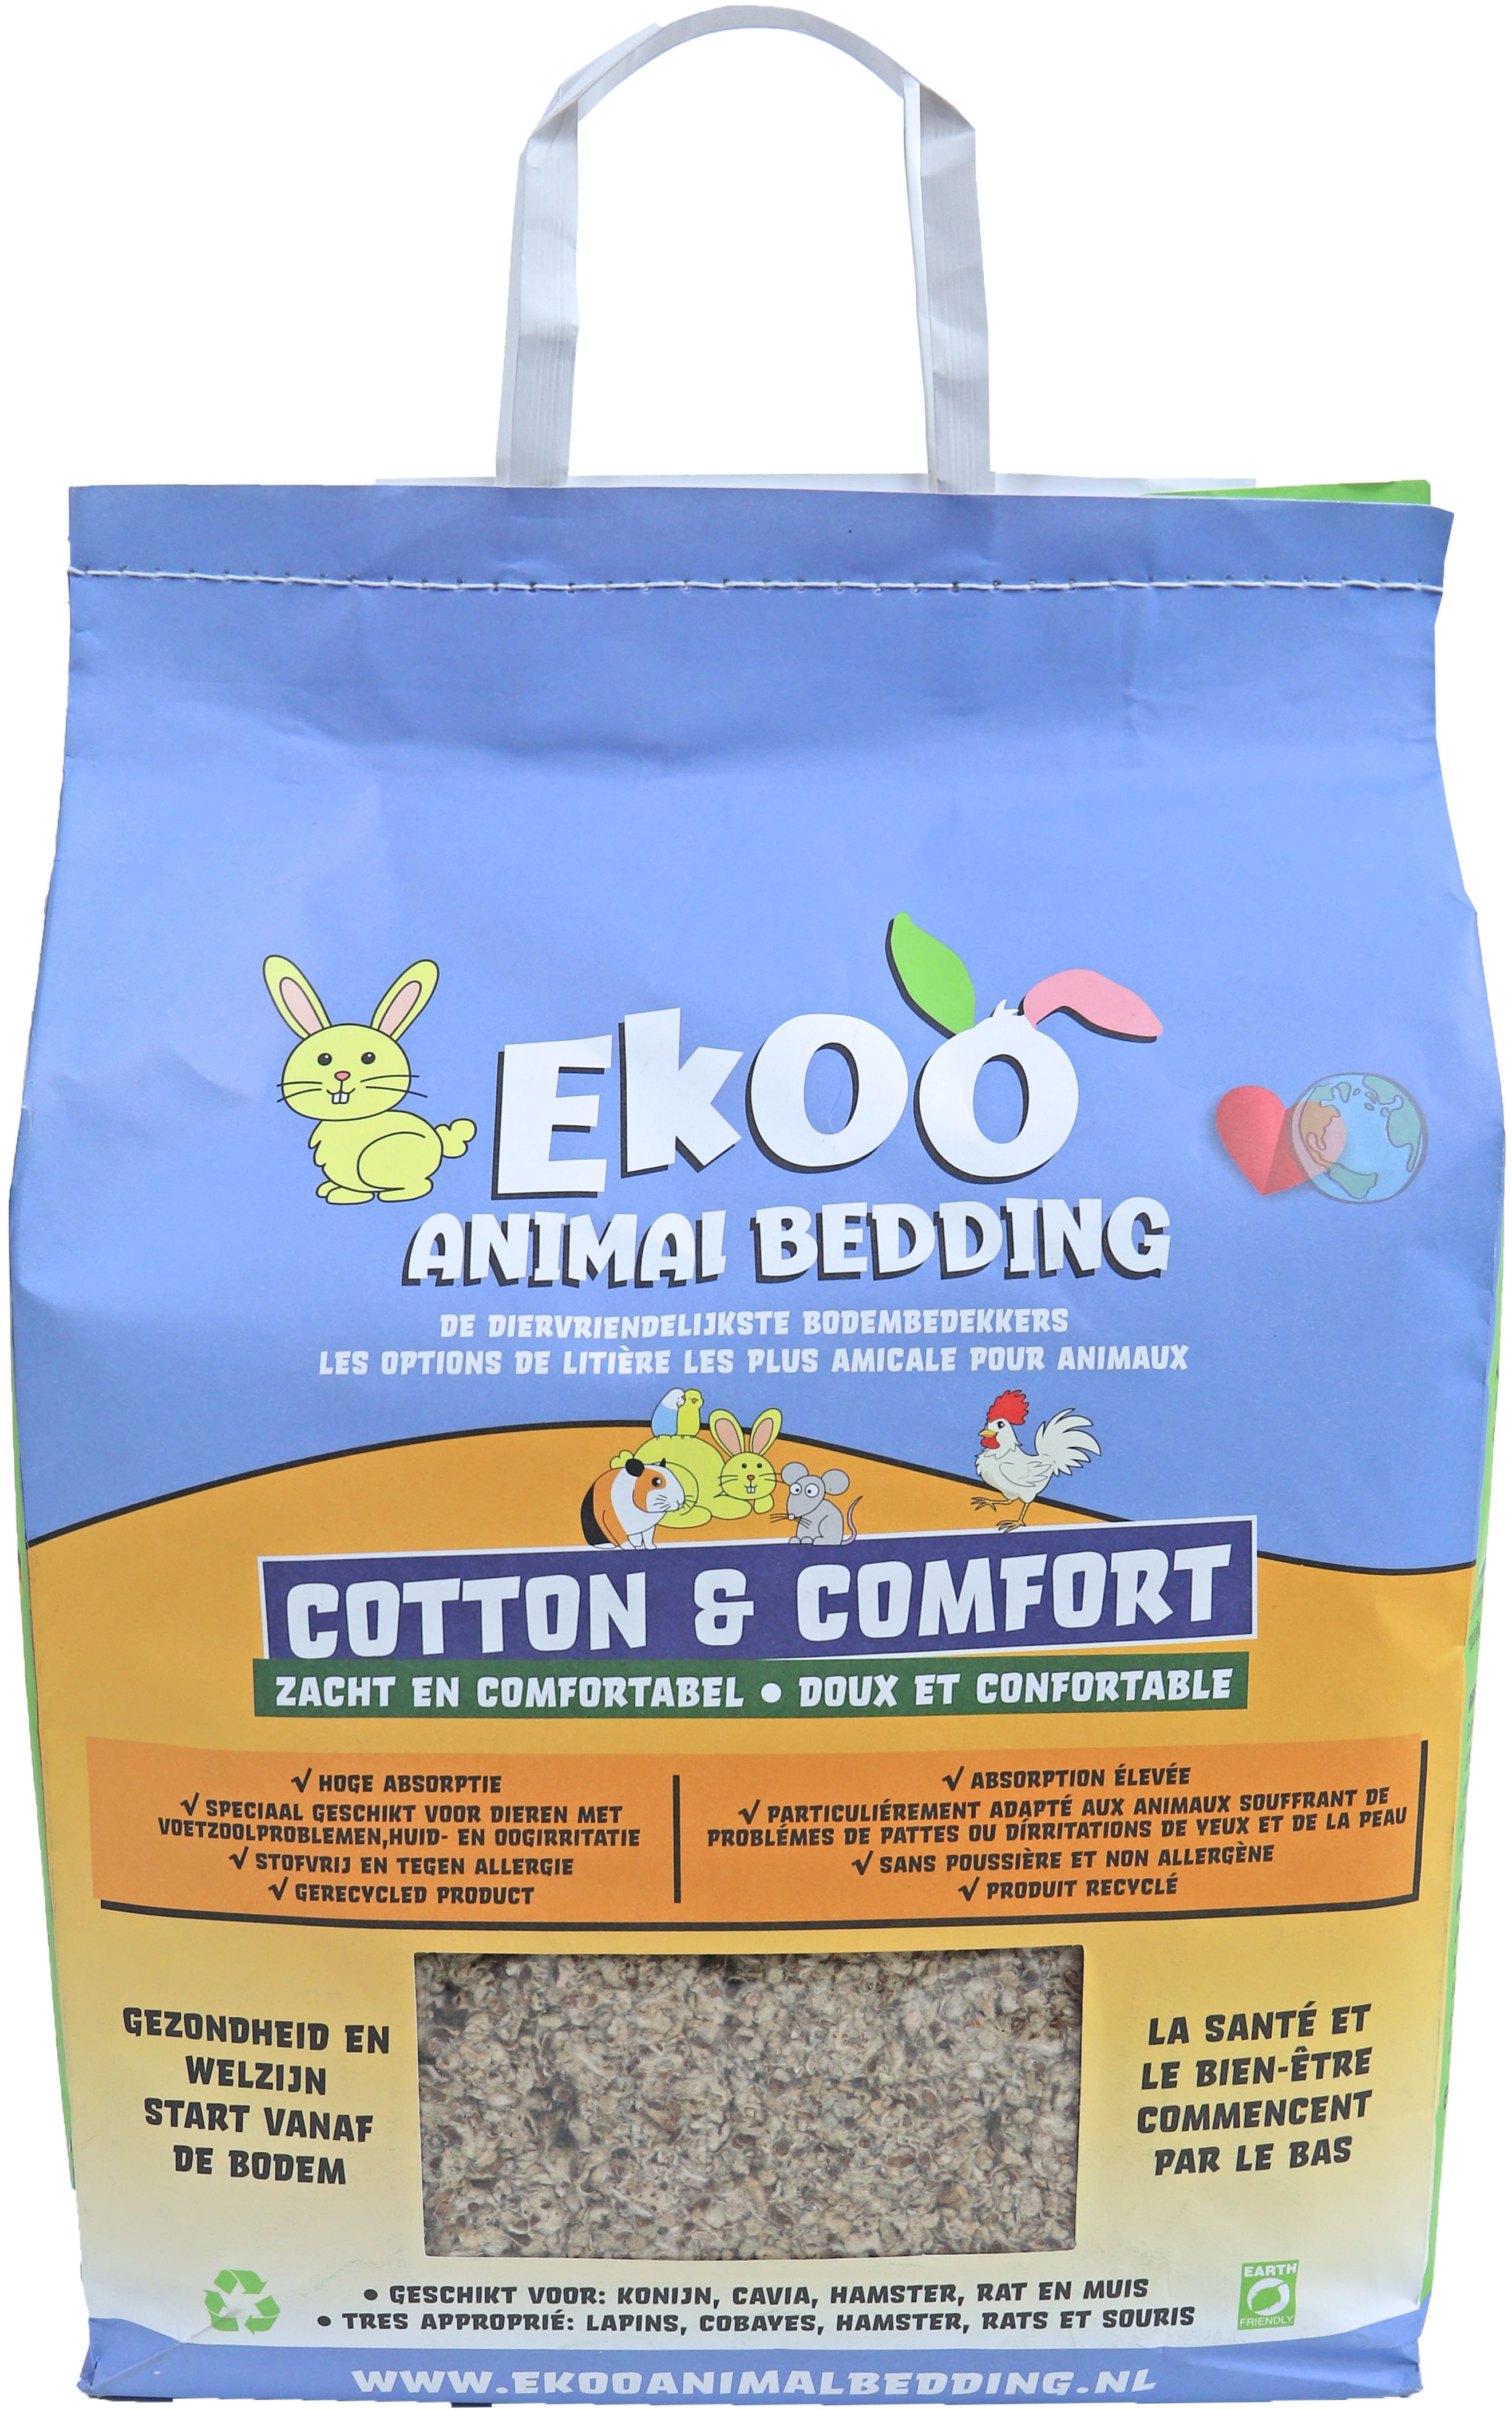 Ekoo bodembedekker Animalbedding cotton & comfort